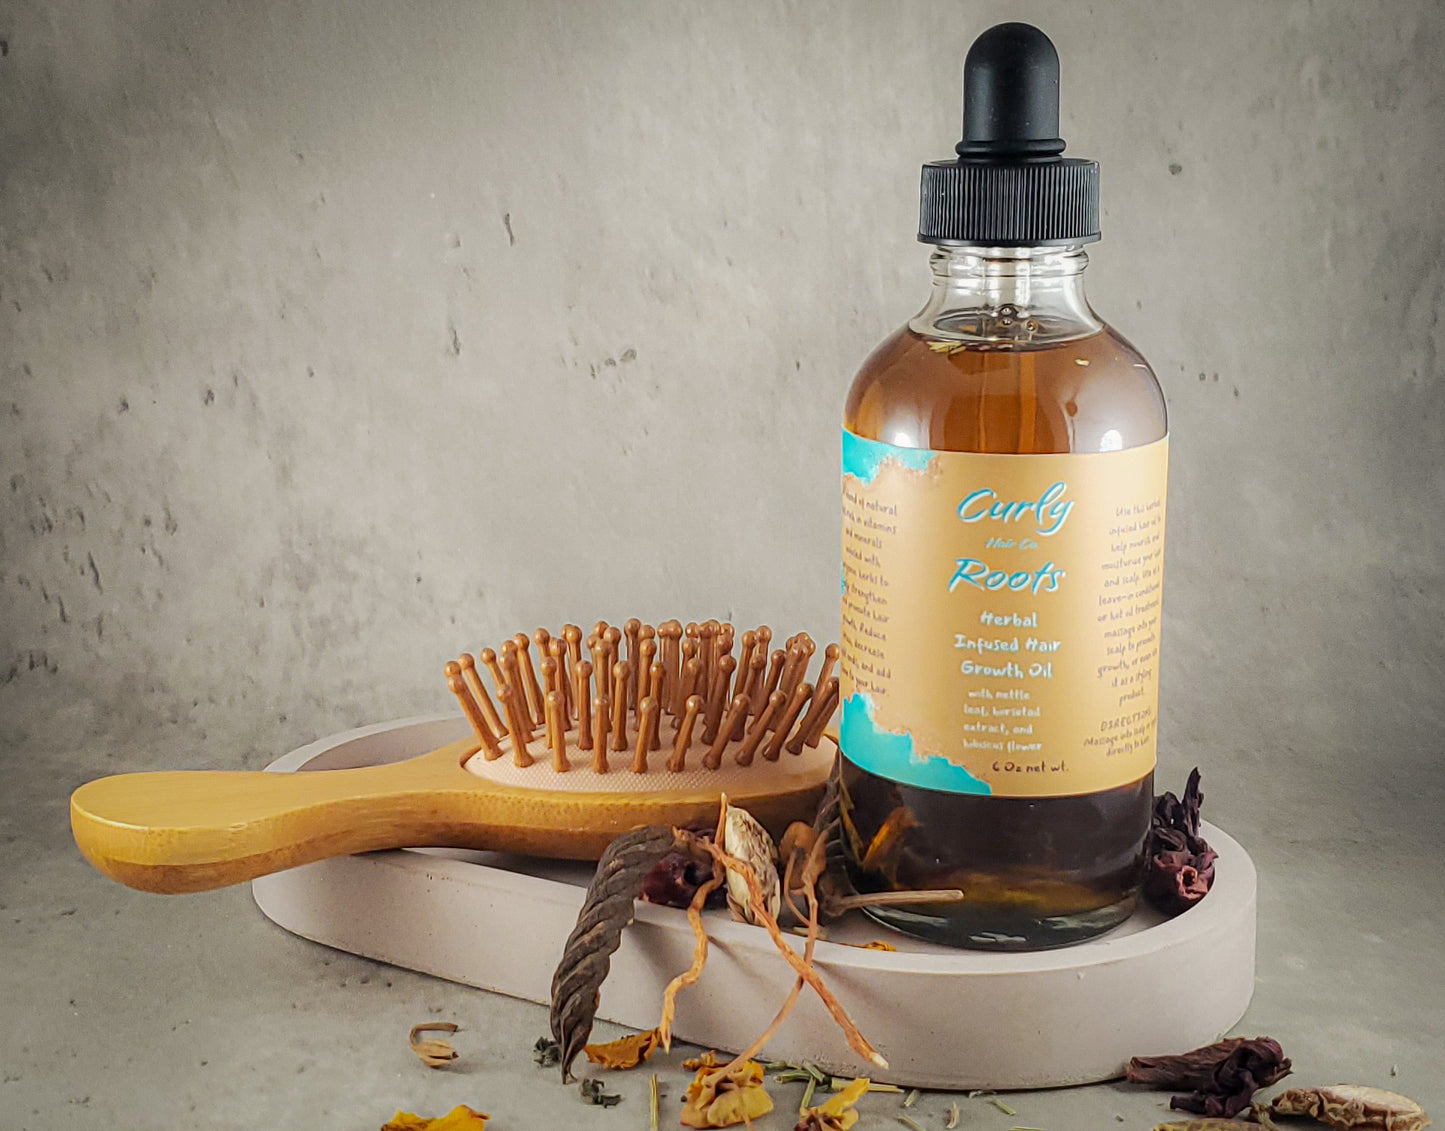 Herbal Infused Hair Growth Oil